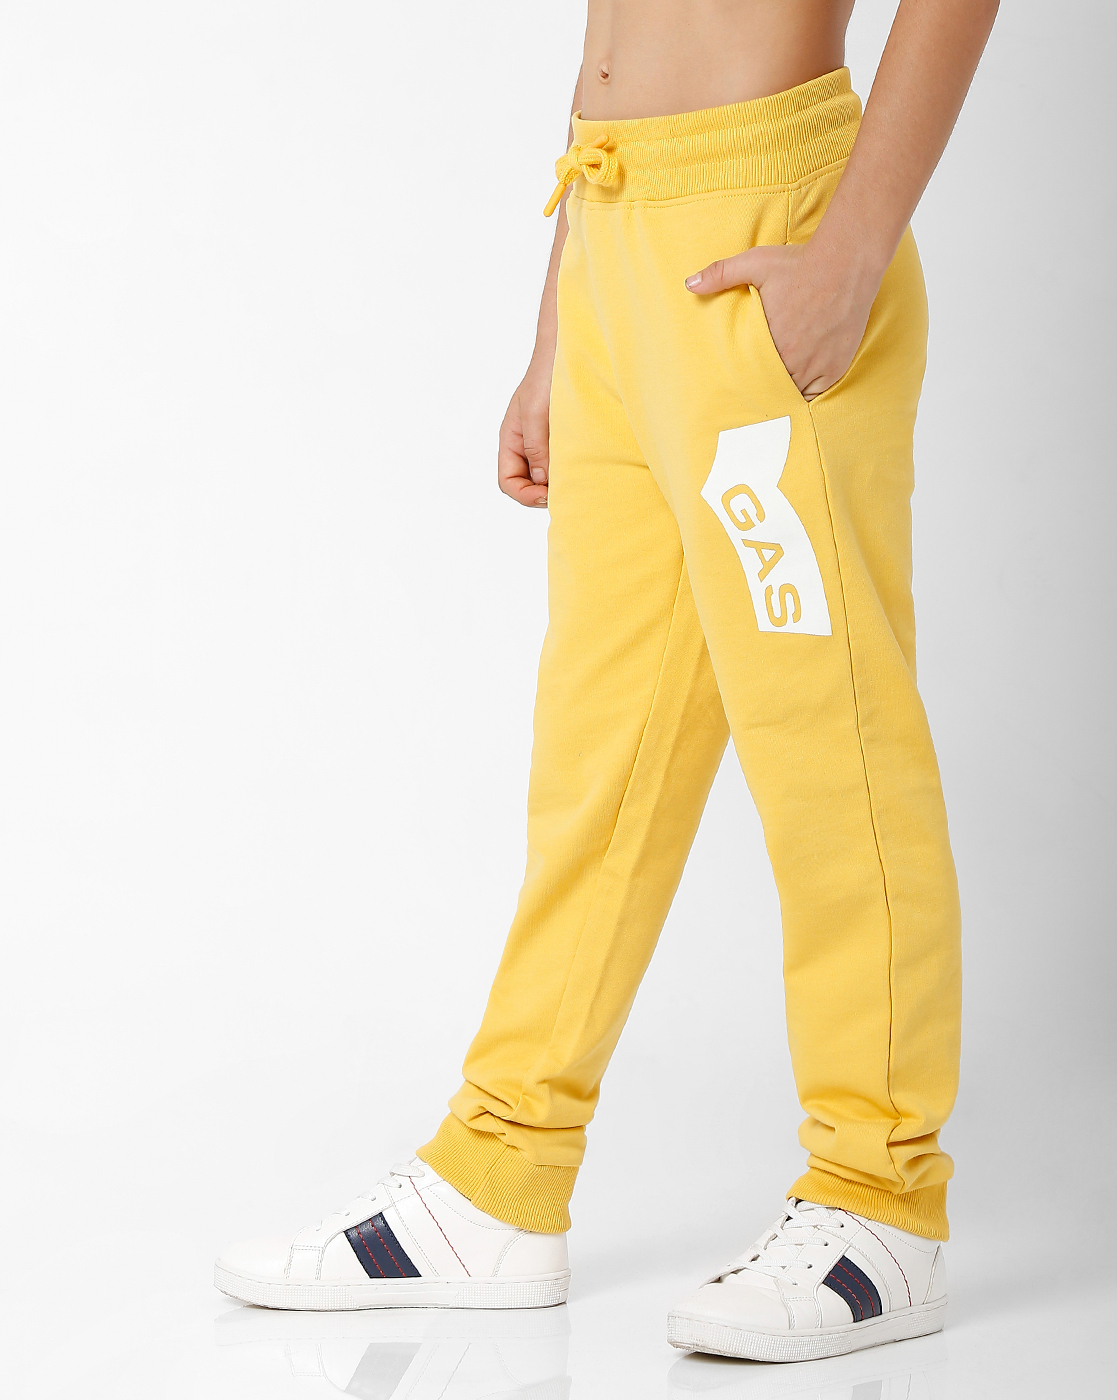 GAS KIDS Boys Printed Yellow Trackpants